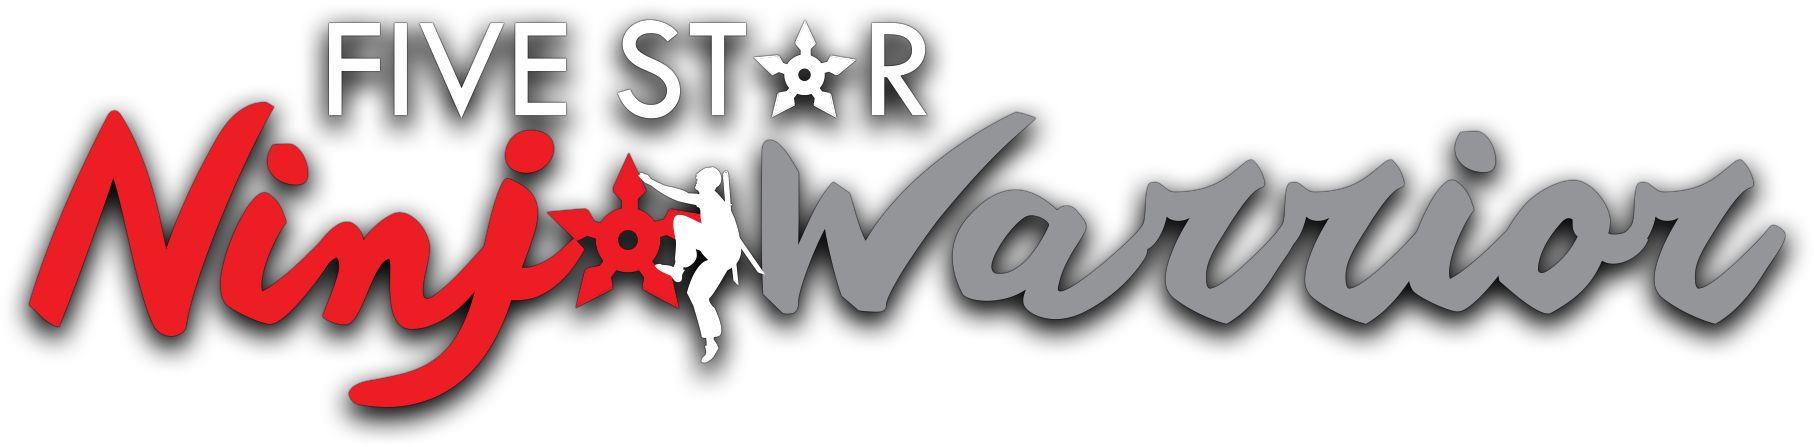 Five Star Ninja Warrior - Graphic Design (1900x500), Png Download